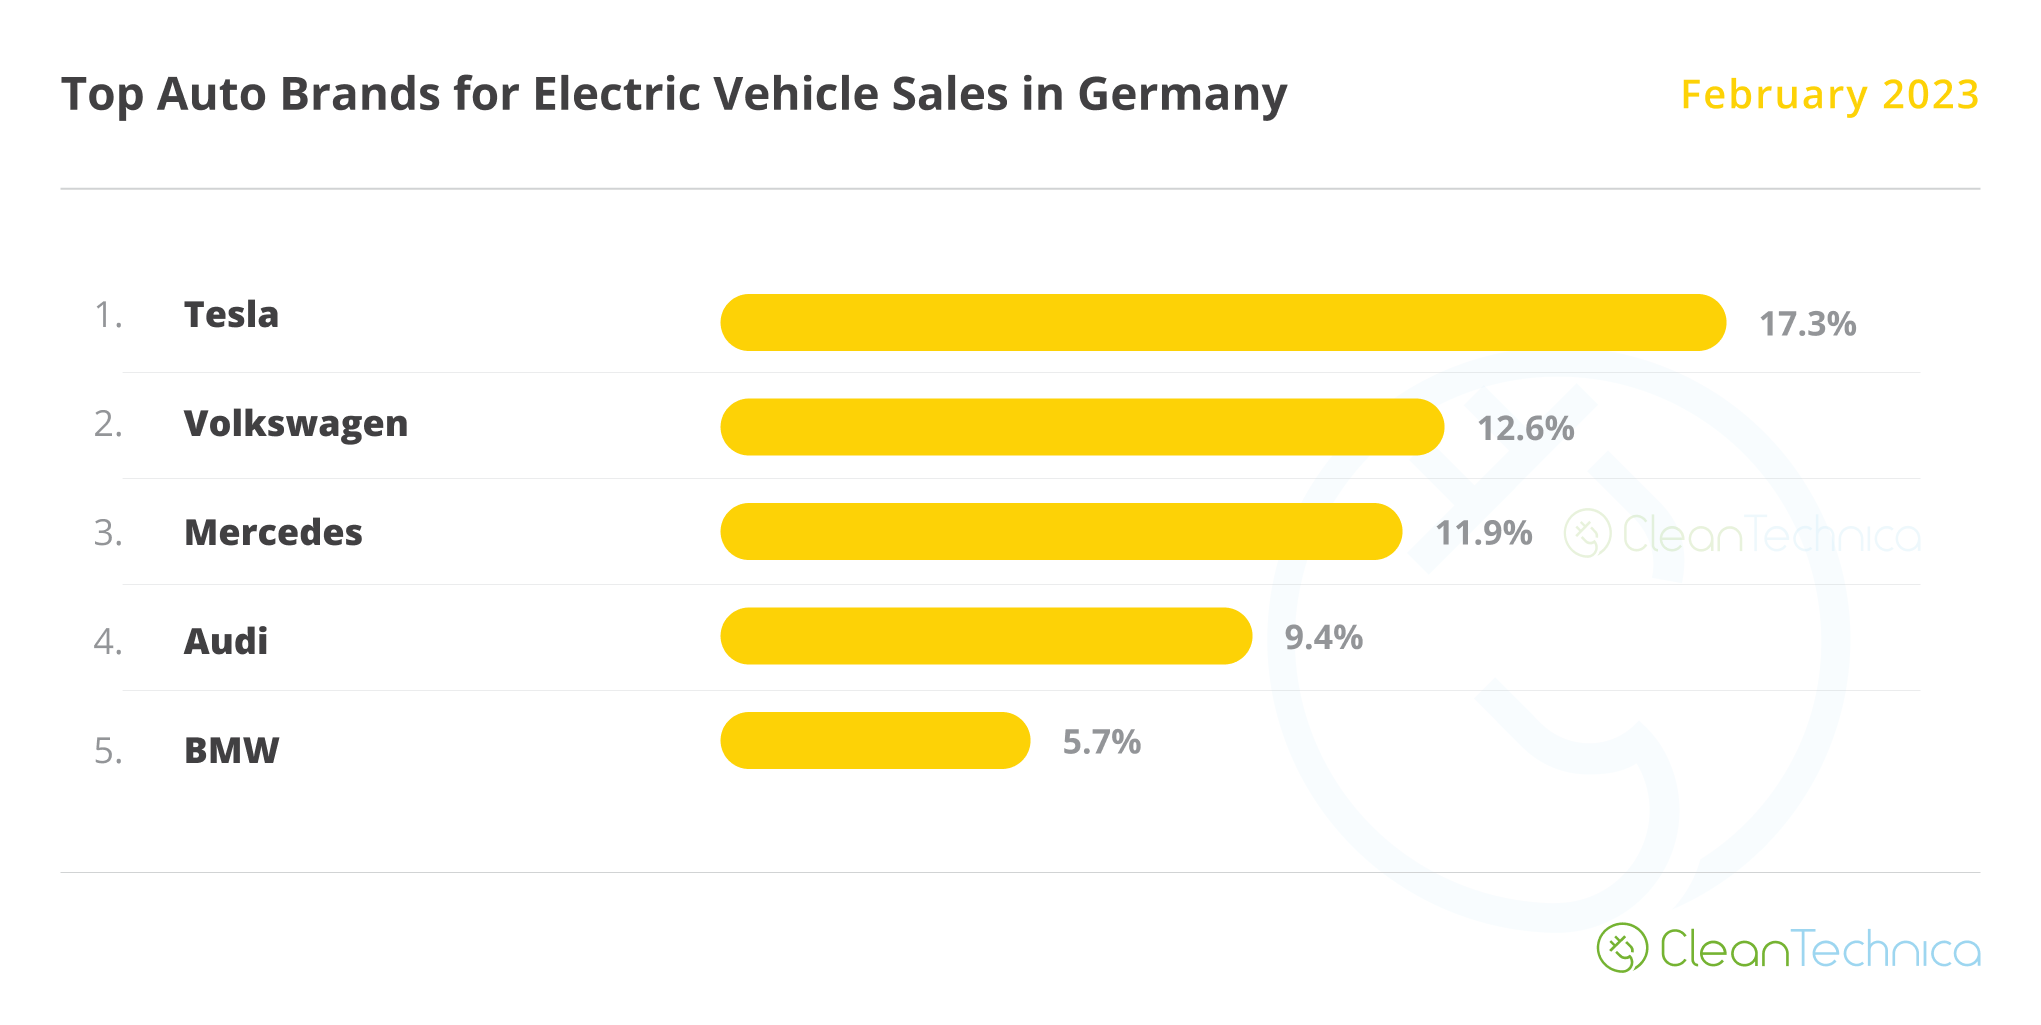 Marchi automobilistici che vendono la maggior parte dei veicoli elettrici in Germania